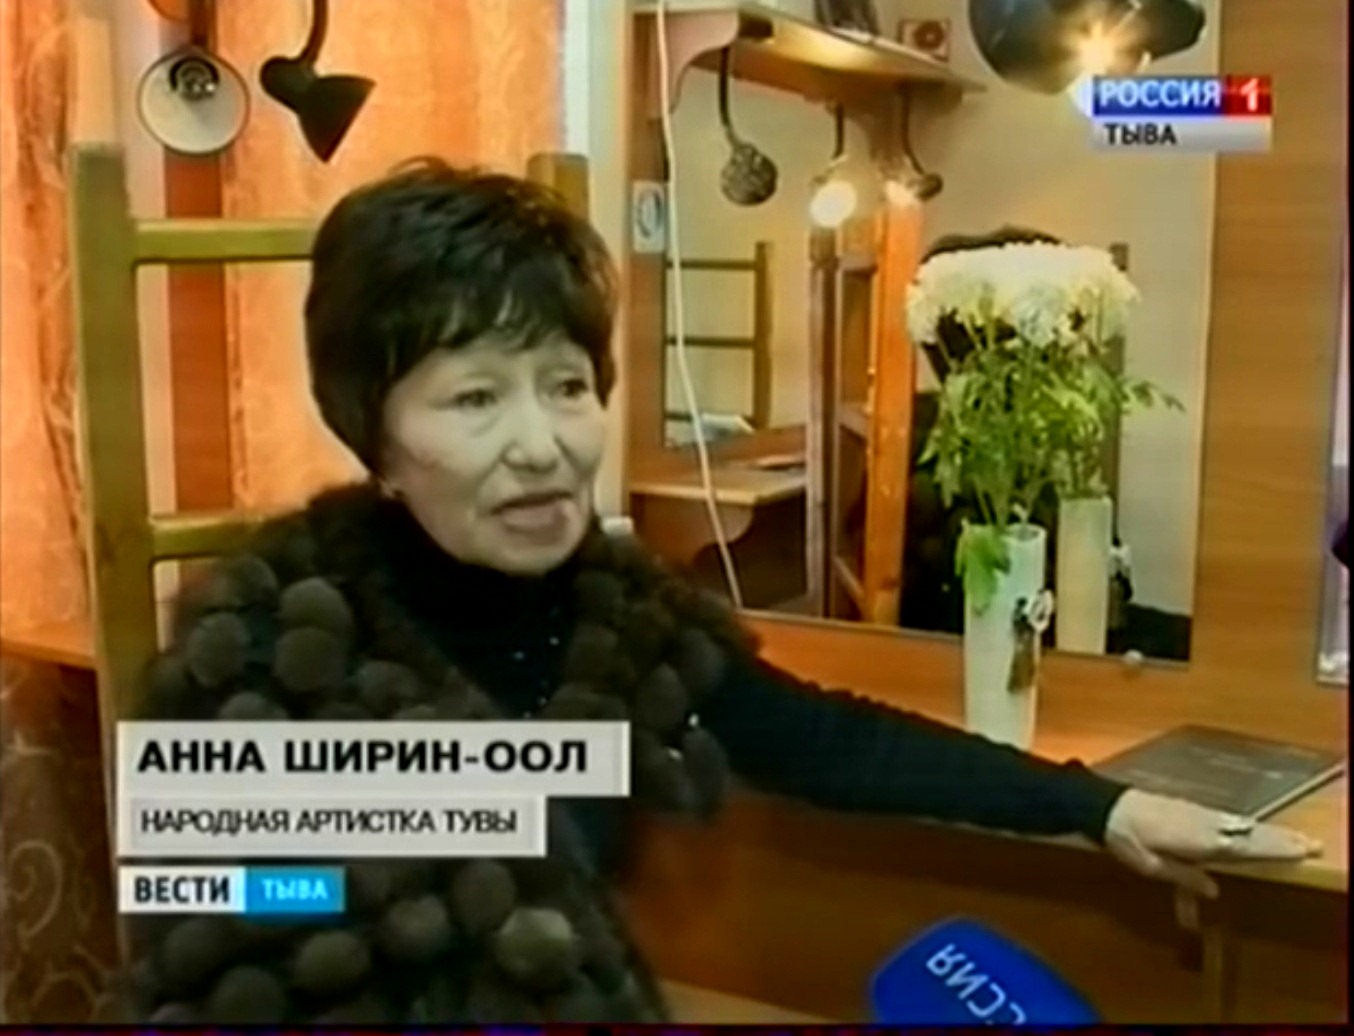 Заслуженная артистка России, Народная артистка Тувы Анна Шириин-оол отпразднует юбилей бенефисом